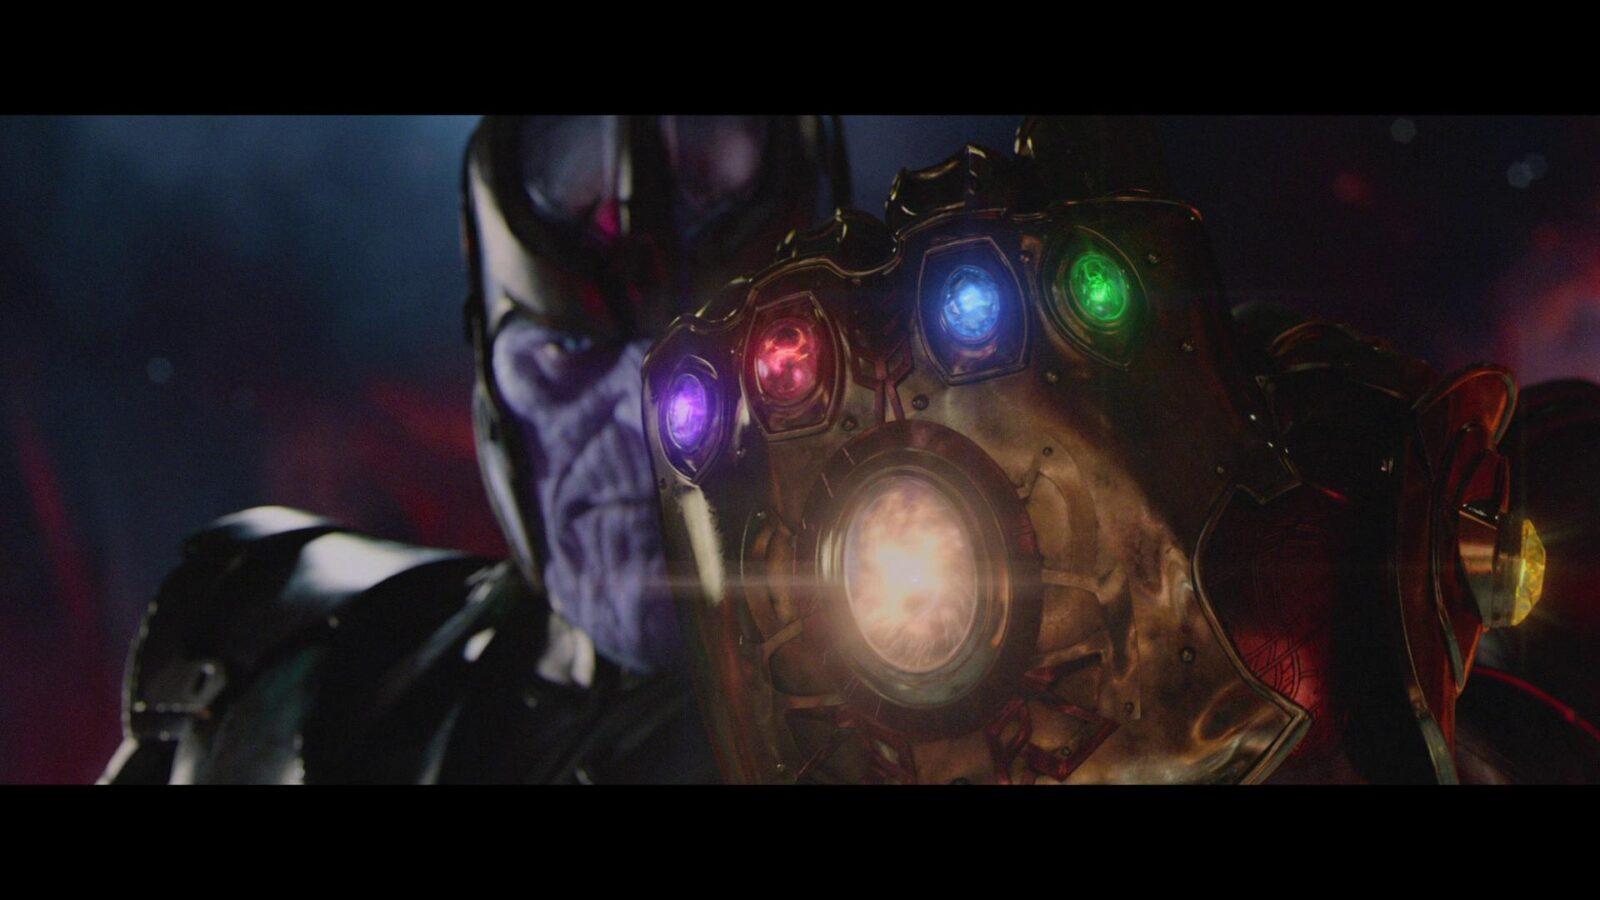 มโนไปไกล Infinity wars 2 อาจจะเป็นศึกช่วงชิง Time gem